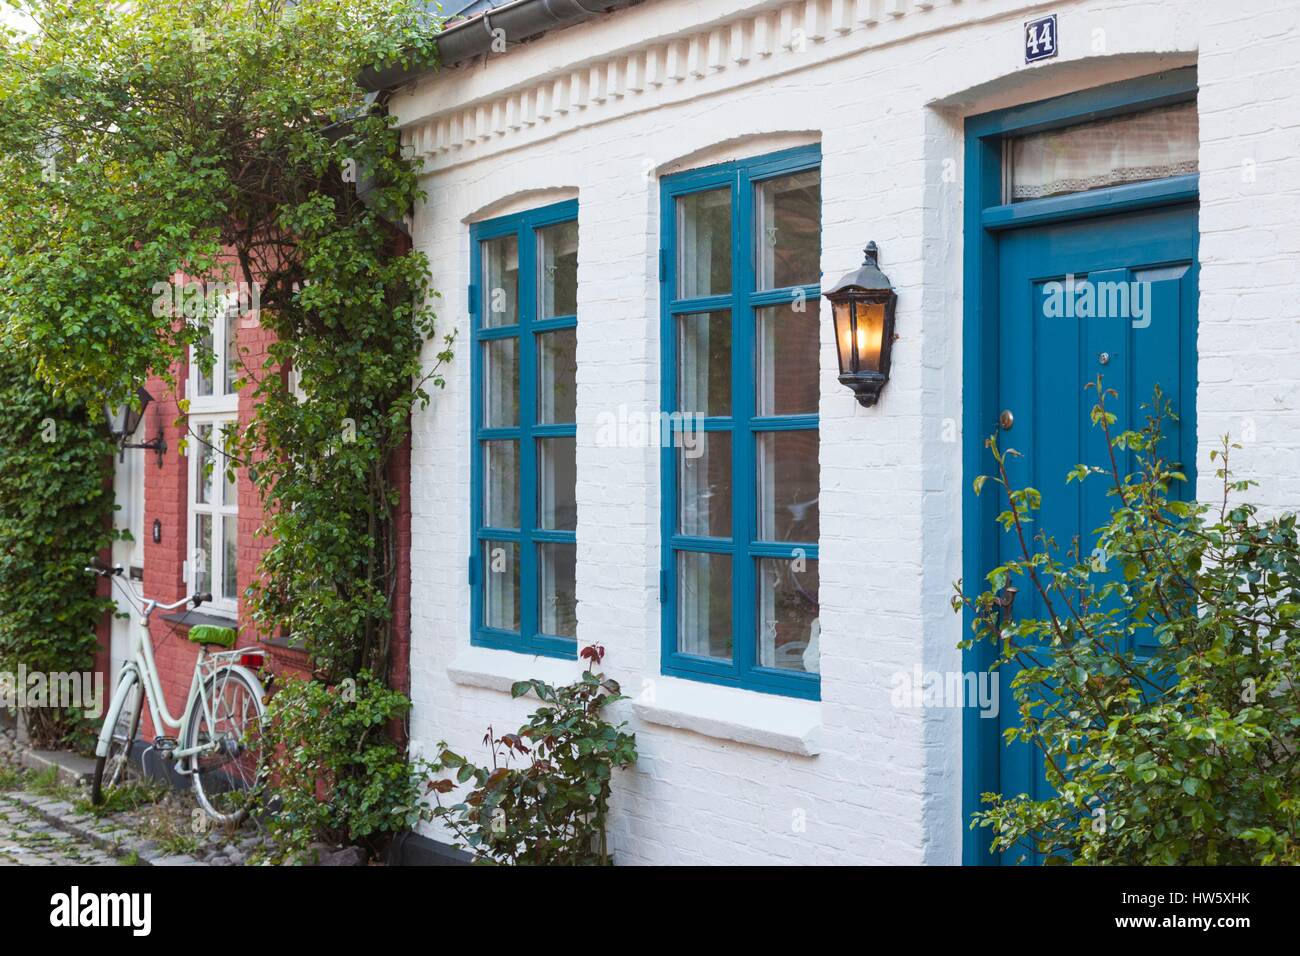 Dinamarca, Jutlandia, Aarhus, calle Mollestien, casas tradicionales Foto de stock